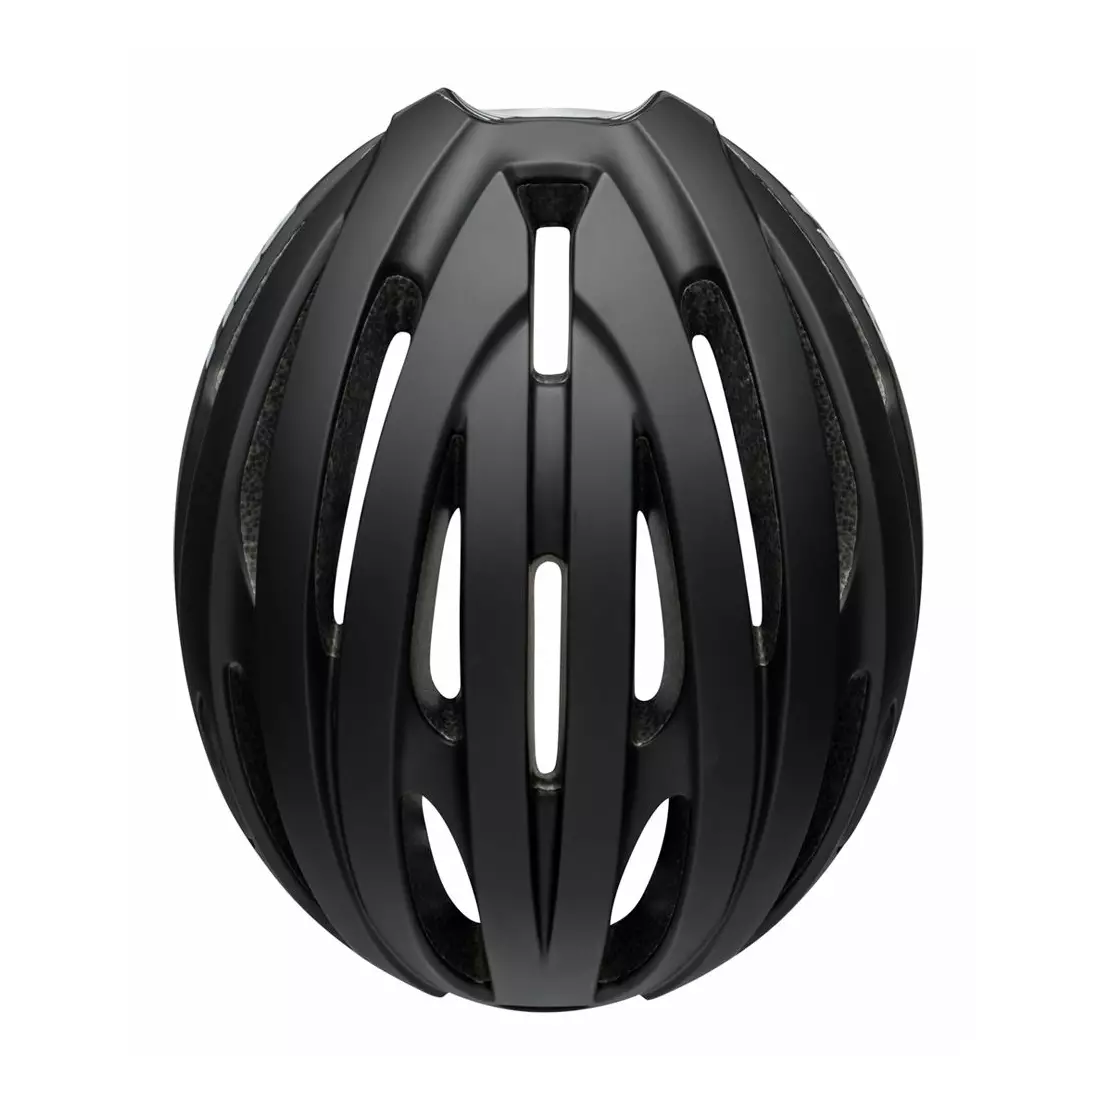 BELL road bike helmet avenue matte gloss black BEL-7115257